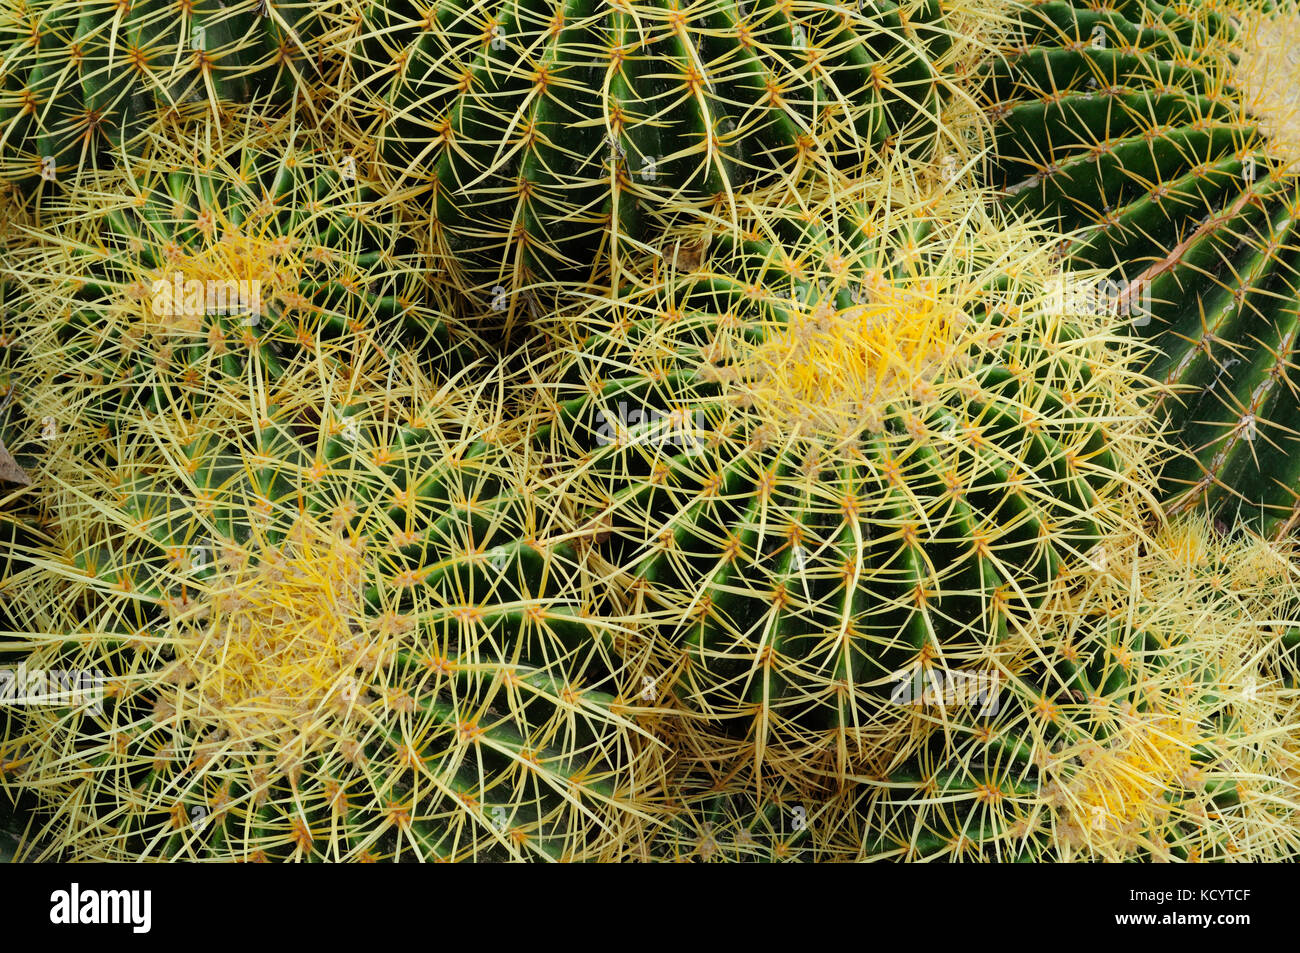 Cactus barril dorado, dorado bolas o suegra del cojín (Echinocactus grusonii). Huerto del Cura jardín artístico nacional. Elche, Alicante, spai Foto de stock